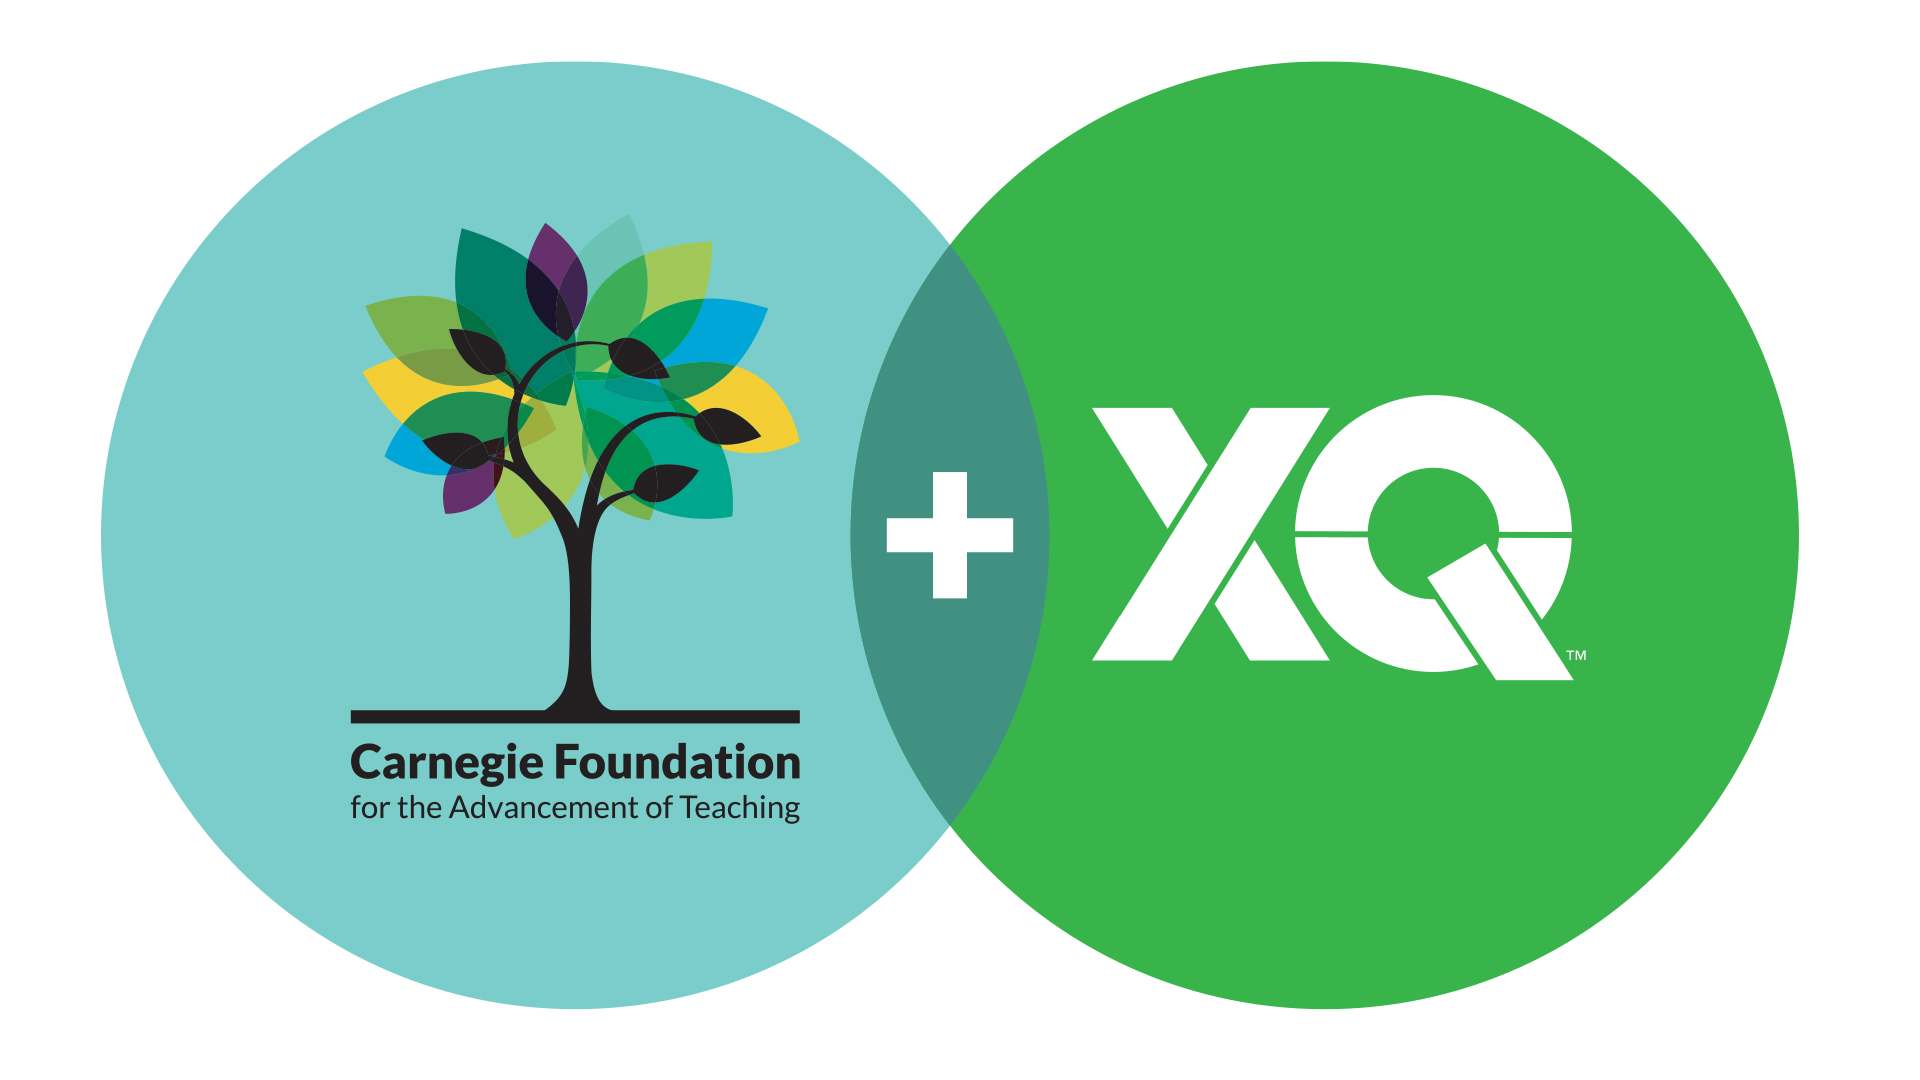 Carnegie Foundation + XQ